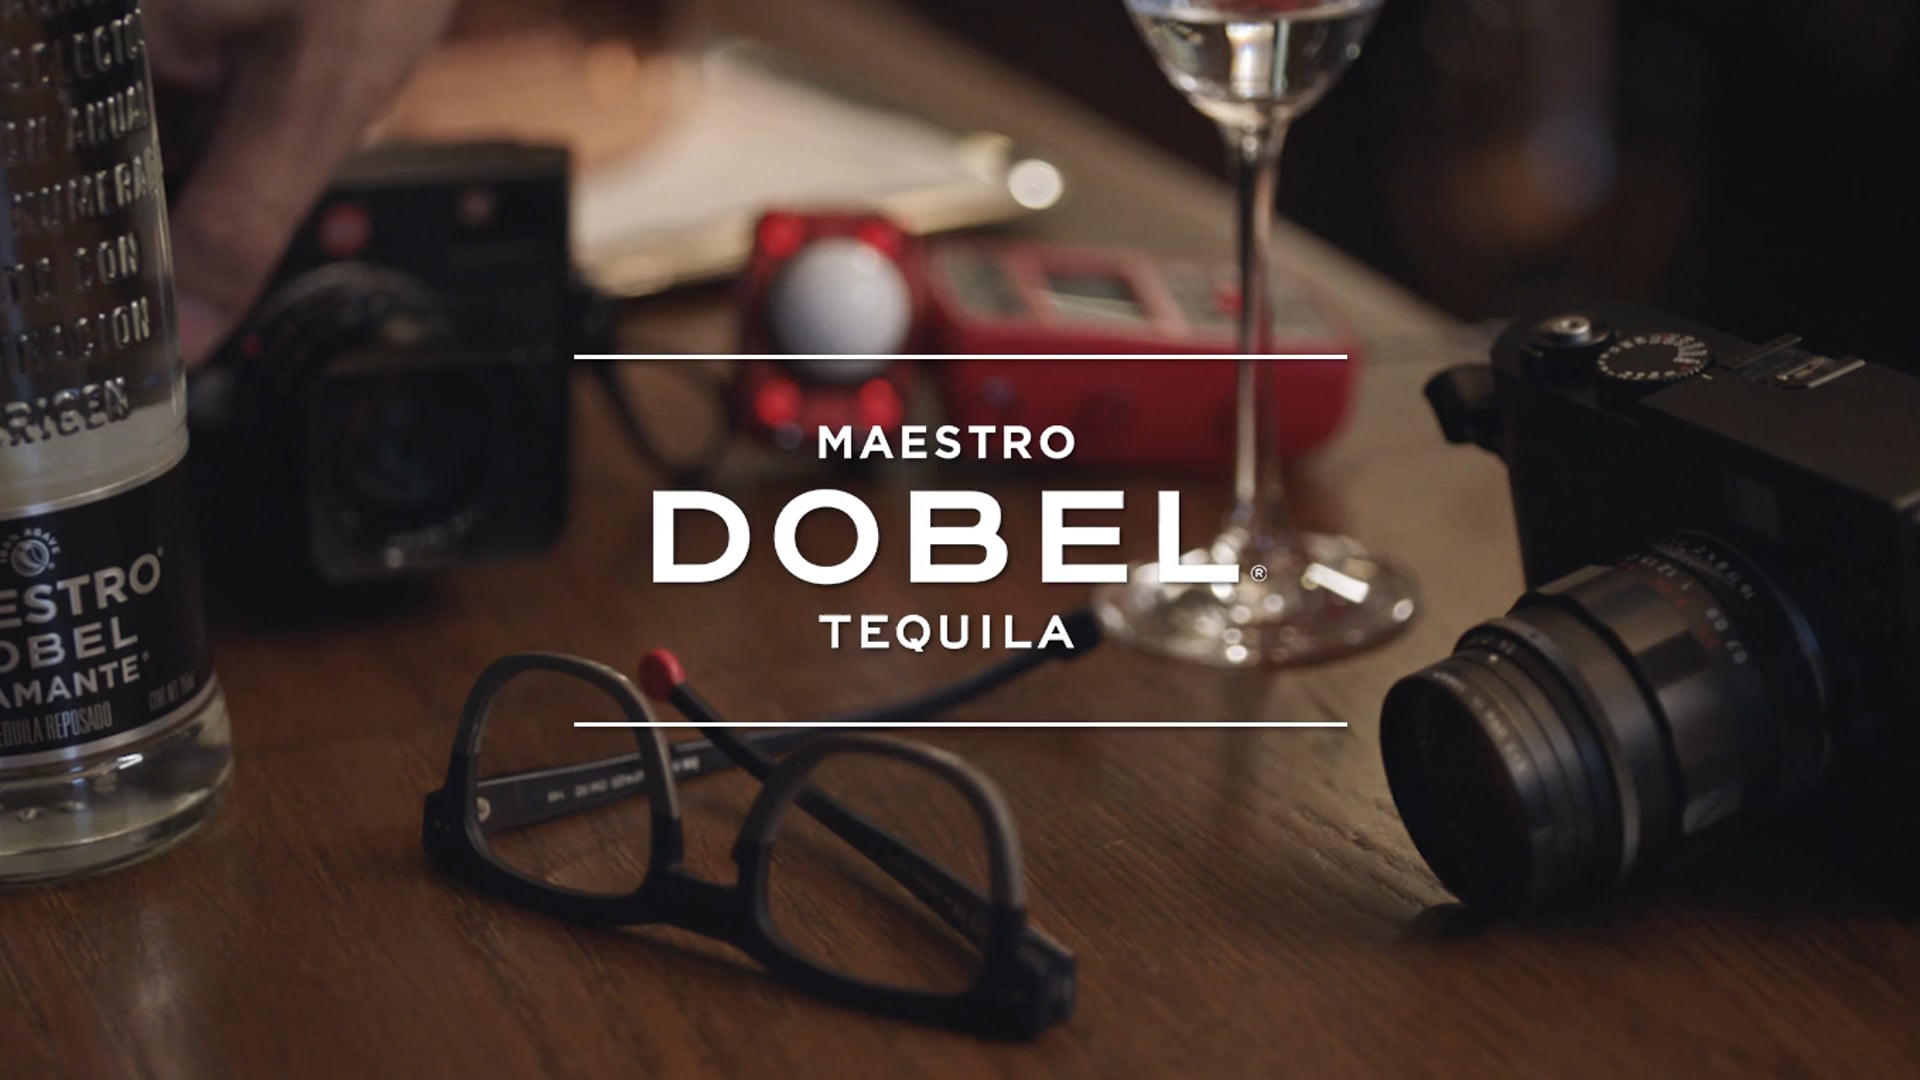 Tequila Maestro Dobel / Innovation / A Film By Kramer Morgenthau.